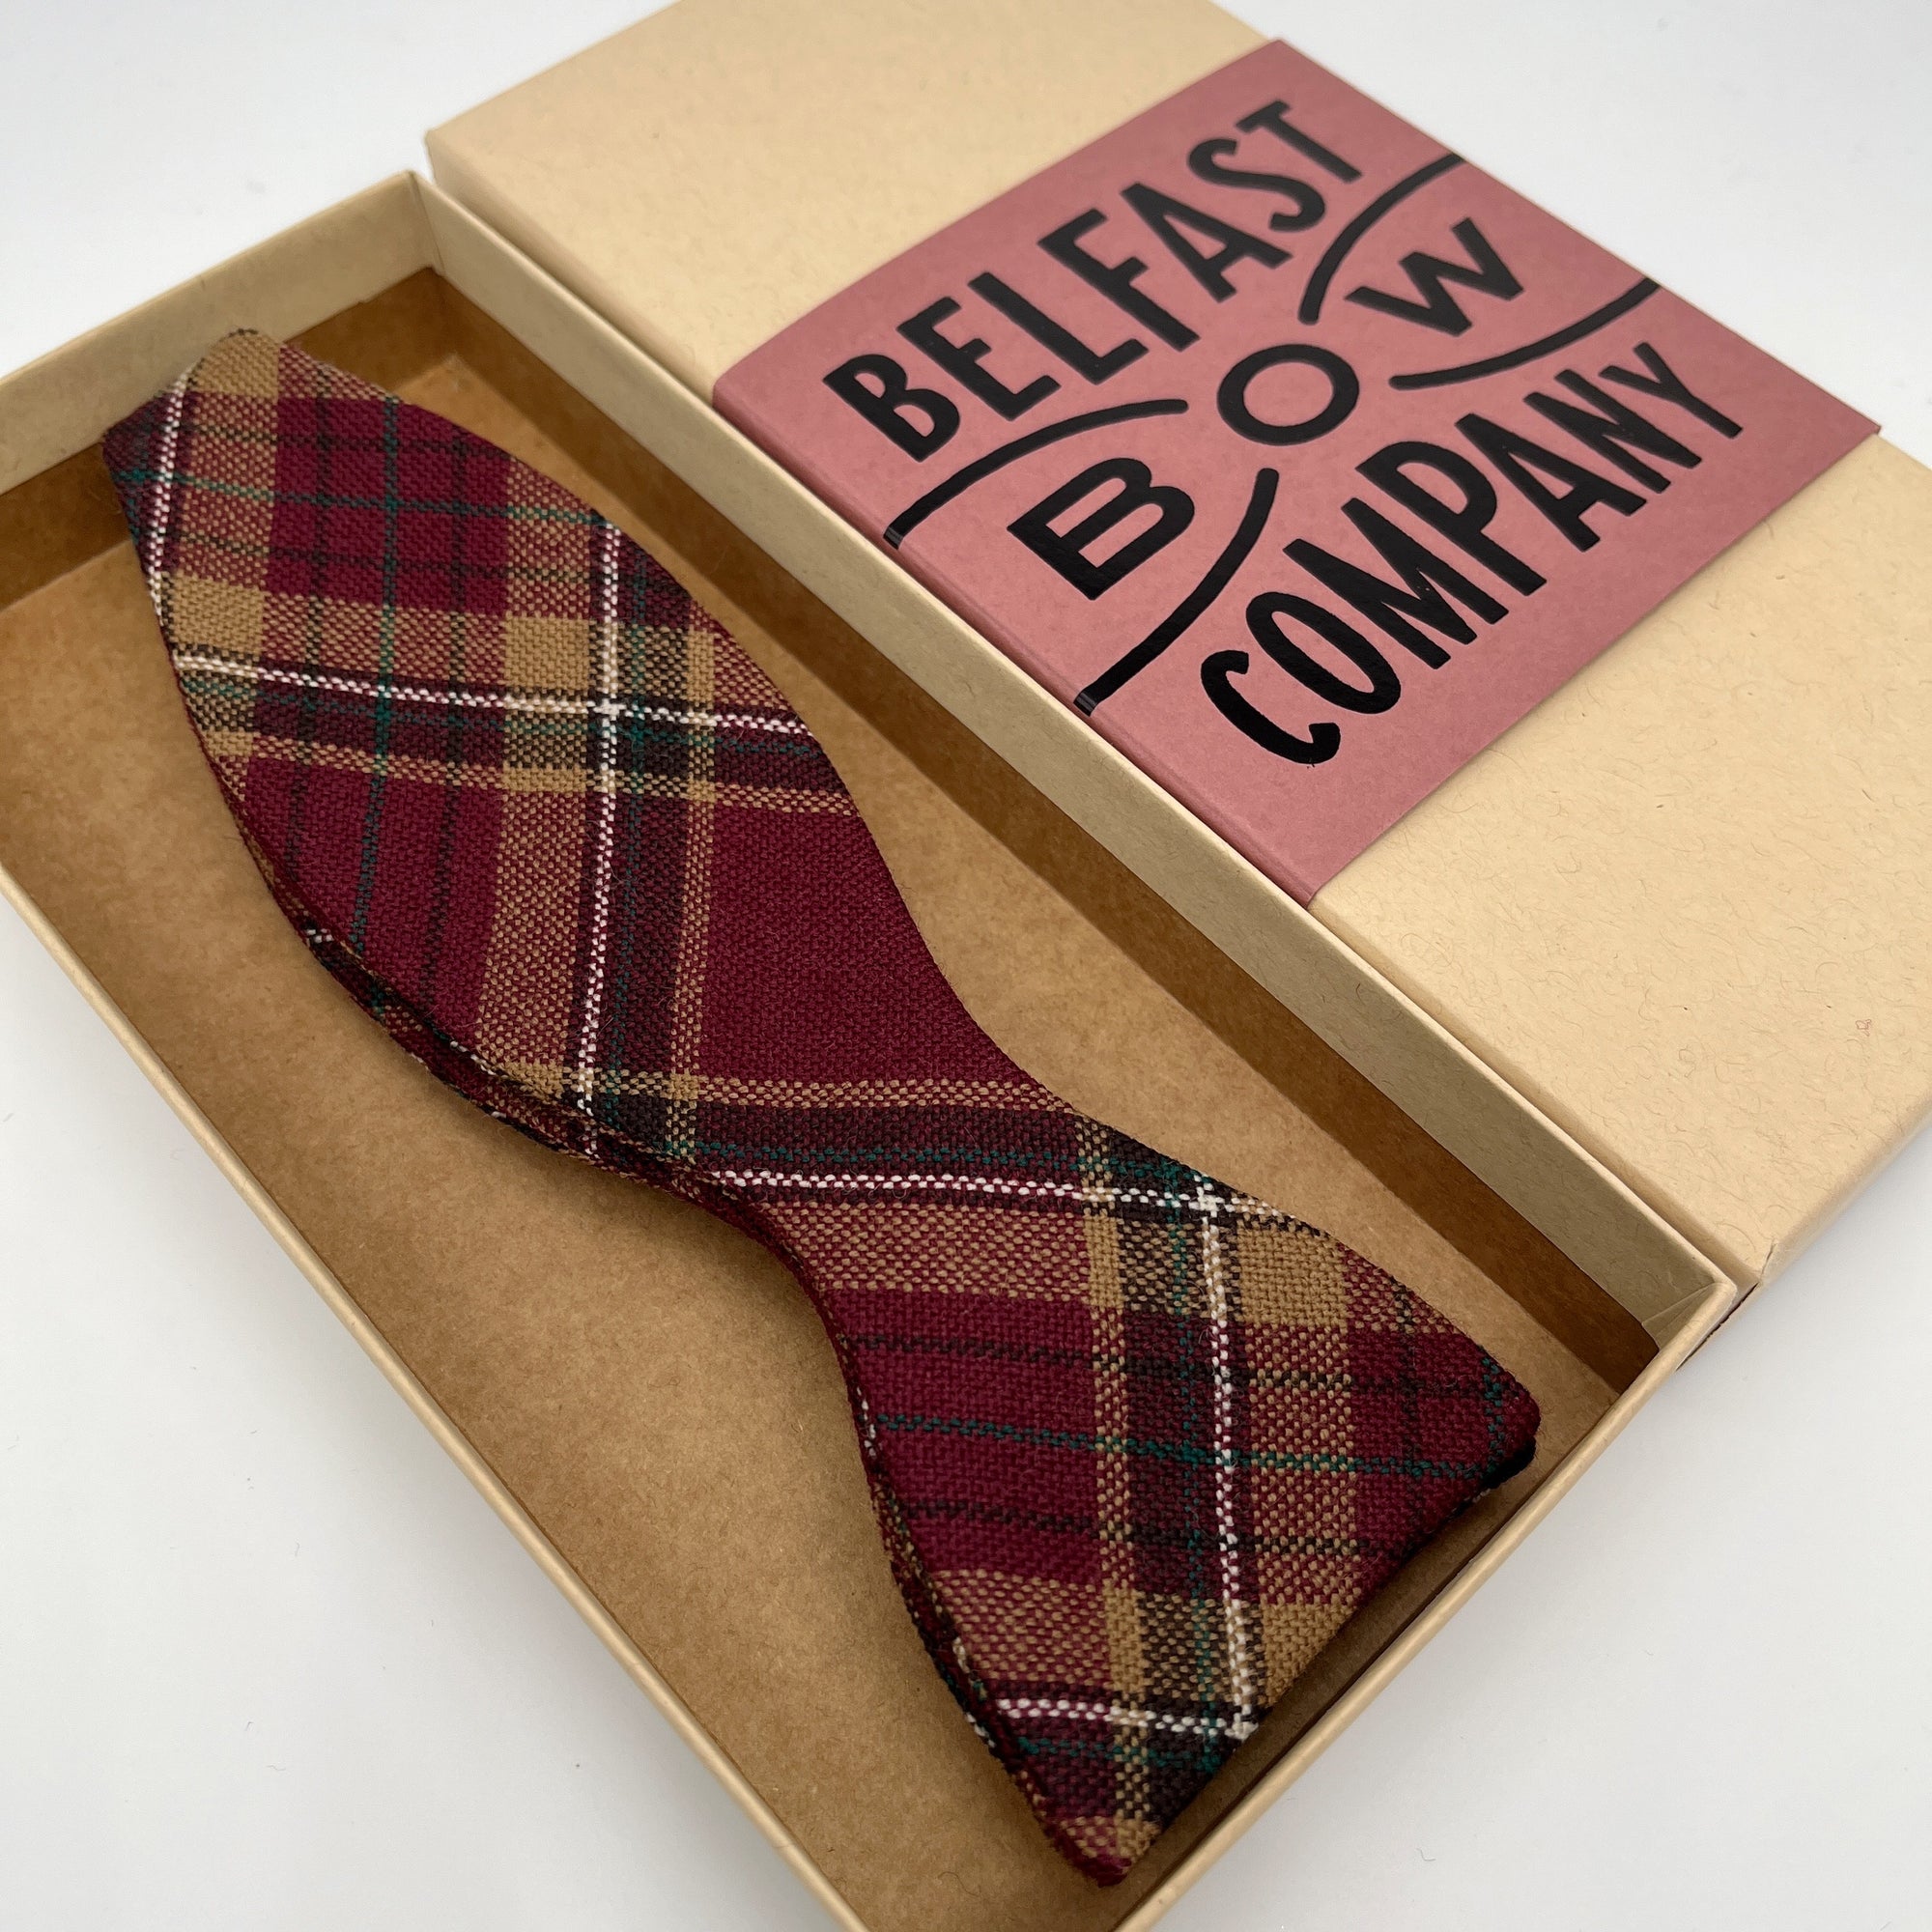 County Tyrone Tartan Self-Tie Bow Tie by the Belfast Bow Company